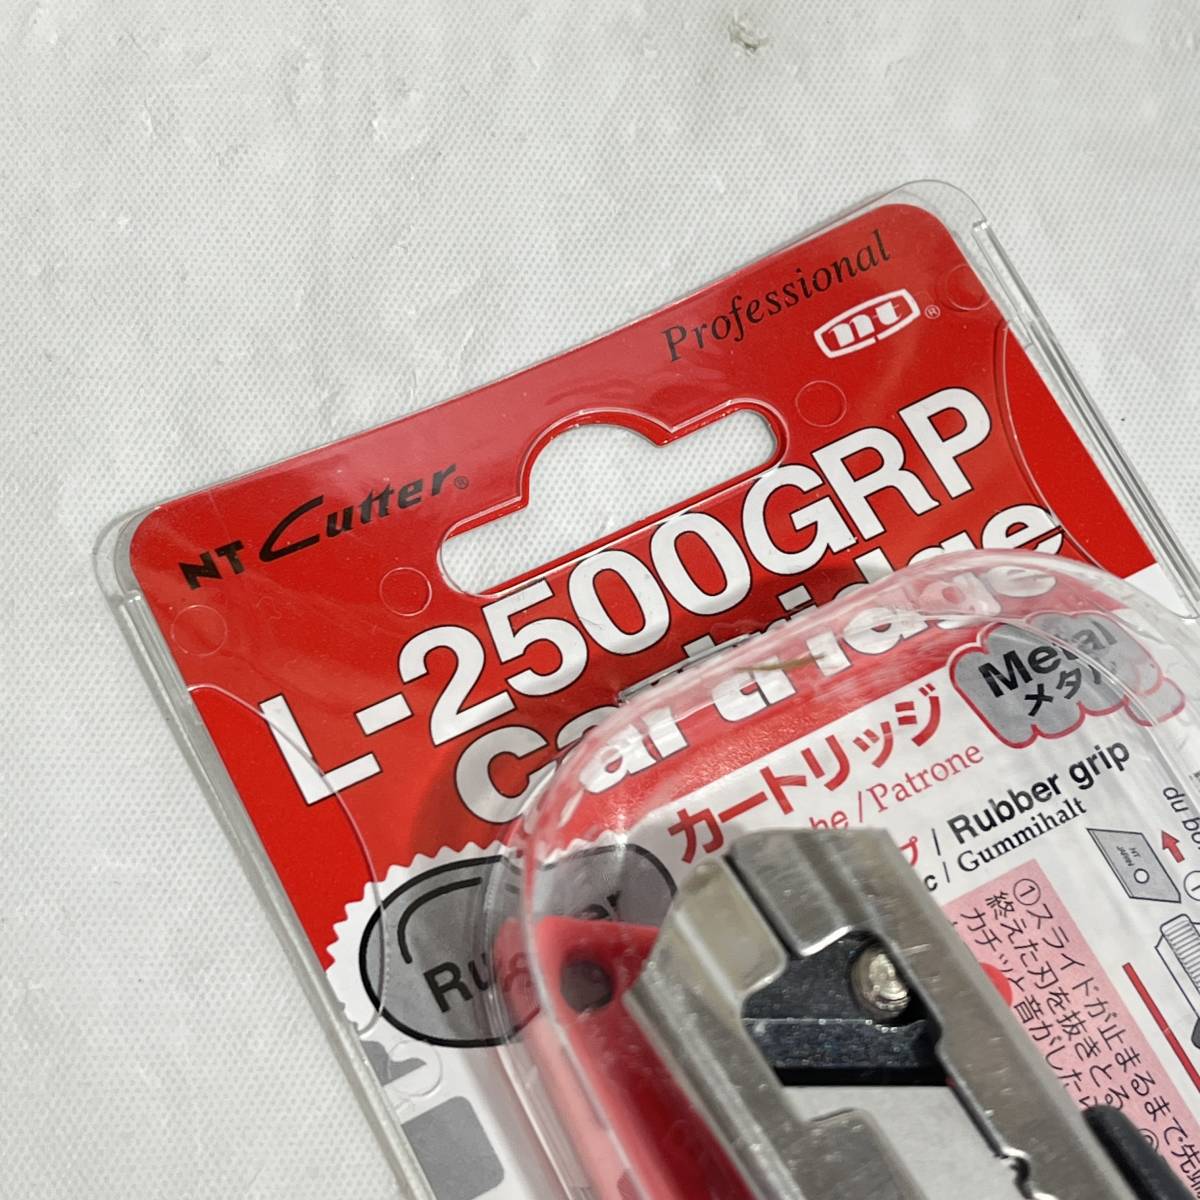 (志木)NTカッター L-2500GRP Cartridge カートリッジ 0.45mm Ltype カッターナイフ 刃 メタルグリップ 工具 DIY エヌティー株式会社 (o)_画像2